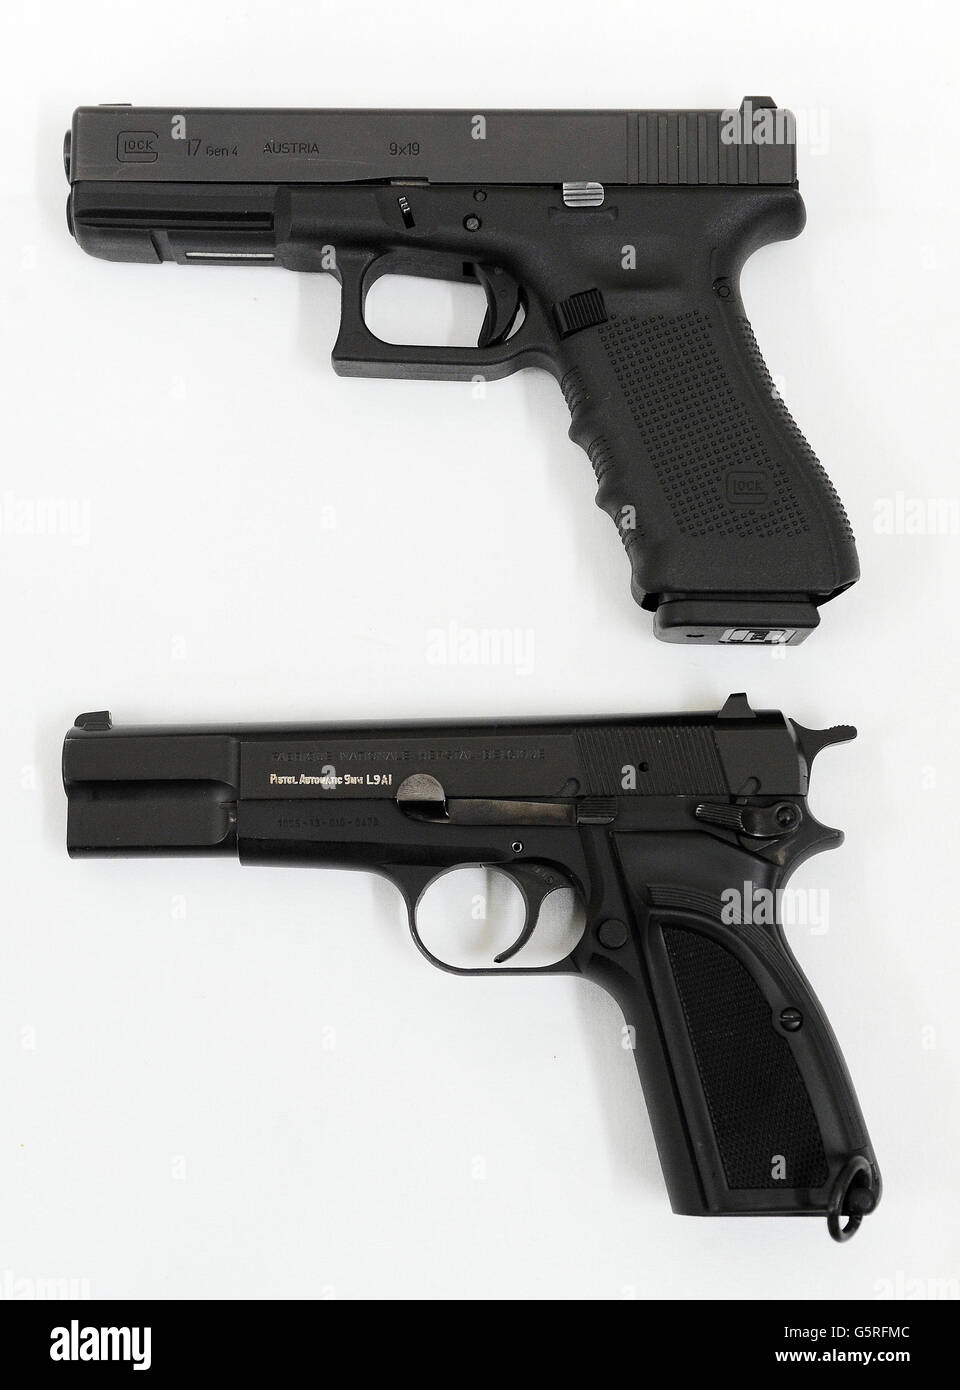 Un pistolet Glock 17 9mm (haut) et son prédécesseur un Browning 9mm à la Woolwich Barracks, dans le sud-est de Londres, comme le personnel des trois services doivent commencer à utiliser les nouvelles pistolets Glock après l'attribution d'un contrat pour remplacer le modèle Browning actuellement utilisé. Banque D'Images